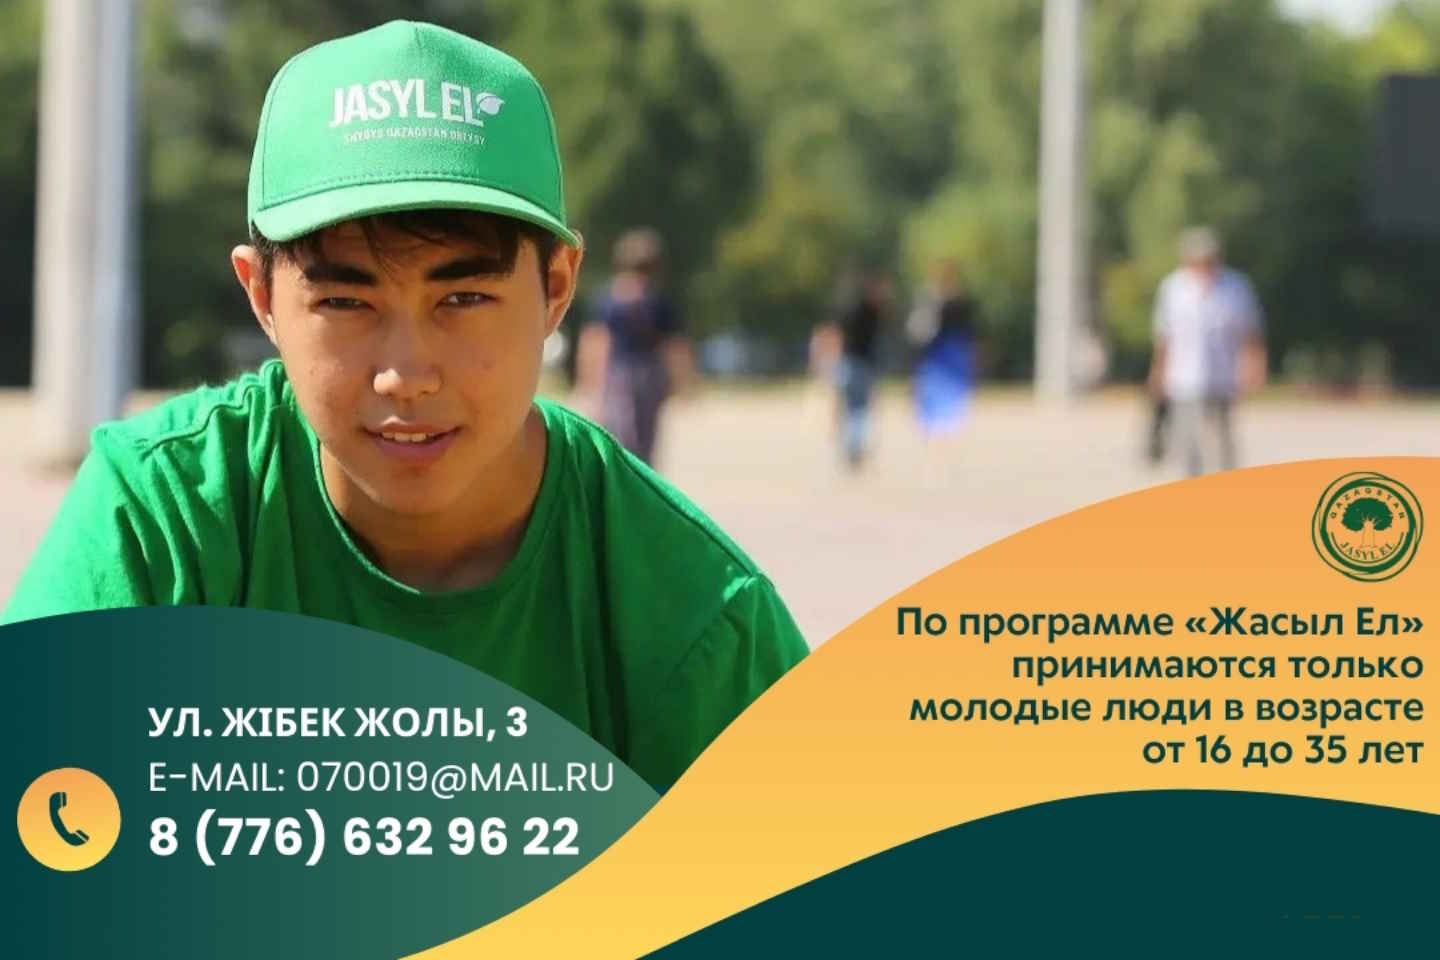 Усть-Каменогорск и ВКО / Молодых устькаменогорцев приглашают на работу